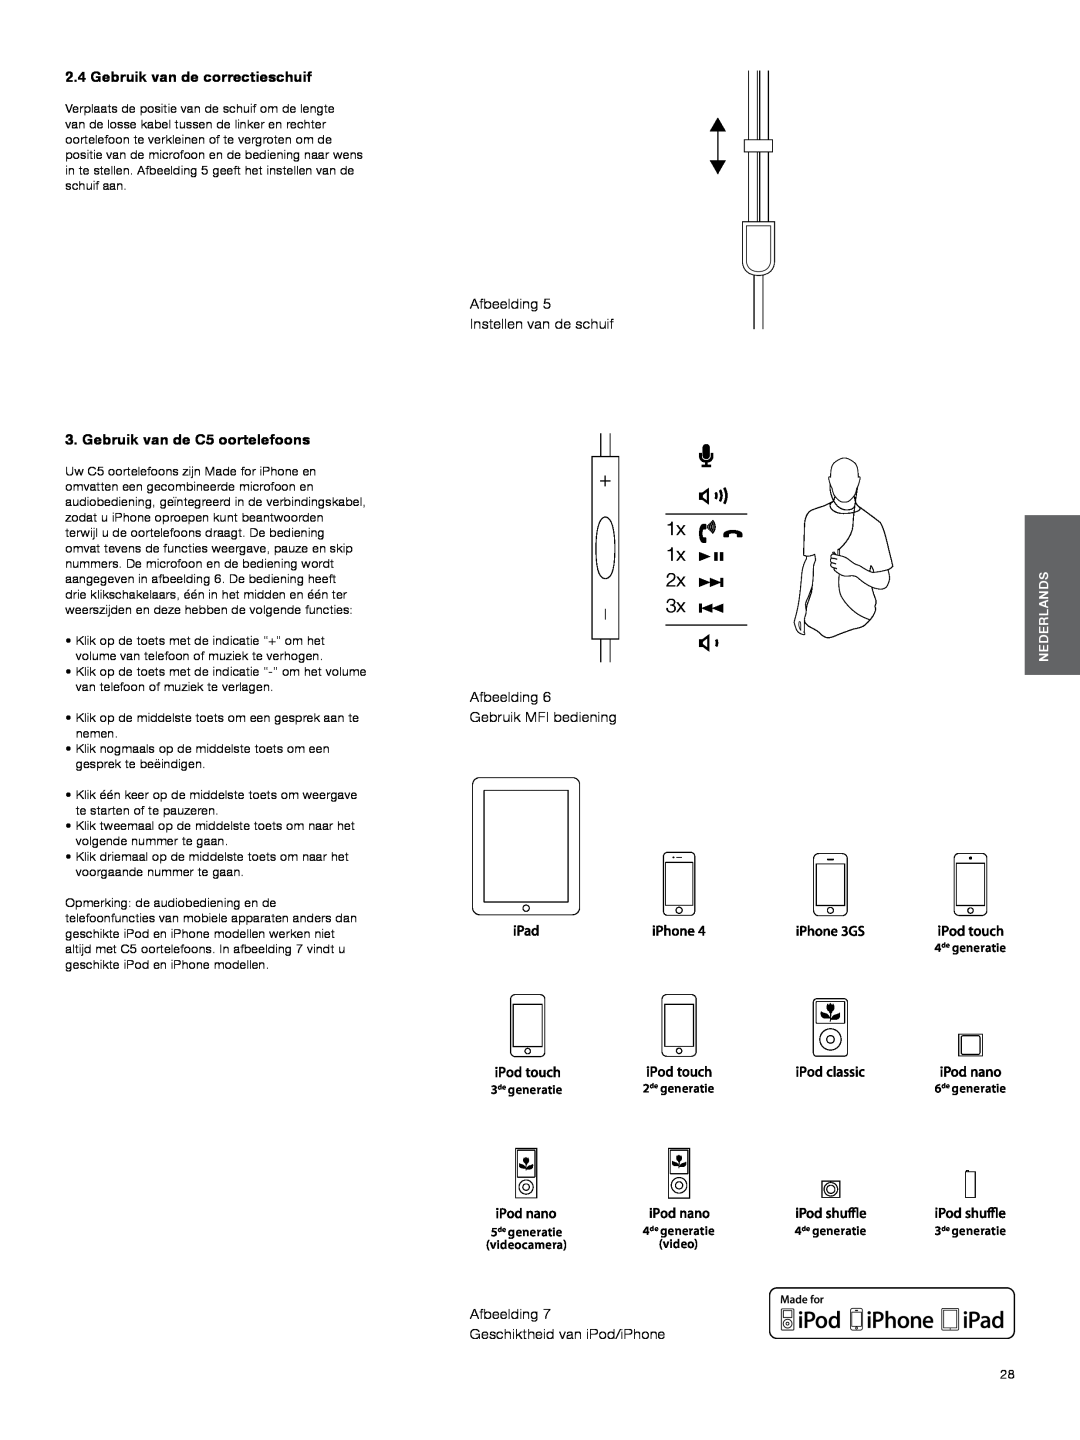 Bowers & Wilkins Gebruik van de correctieschuif, Gebruik van de C5 oortelefoons, Afbeelding Instellen van de schuif 